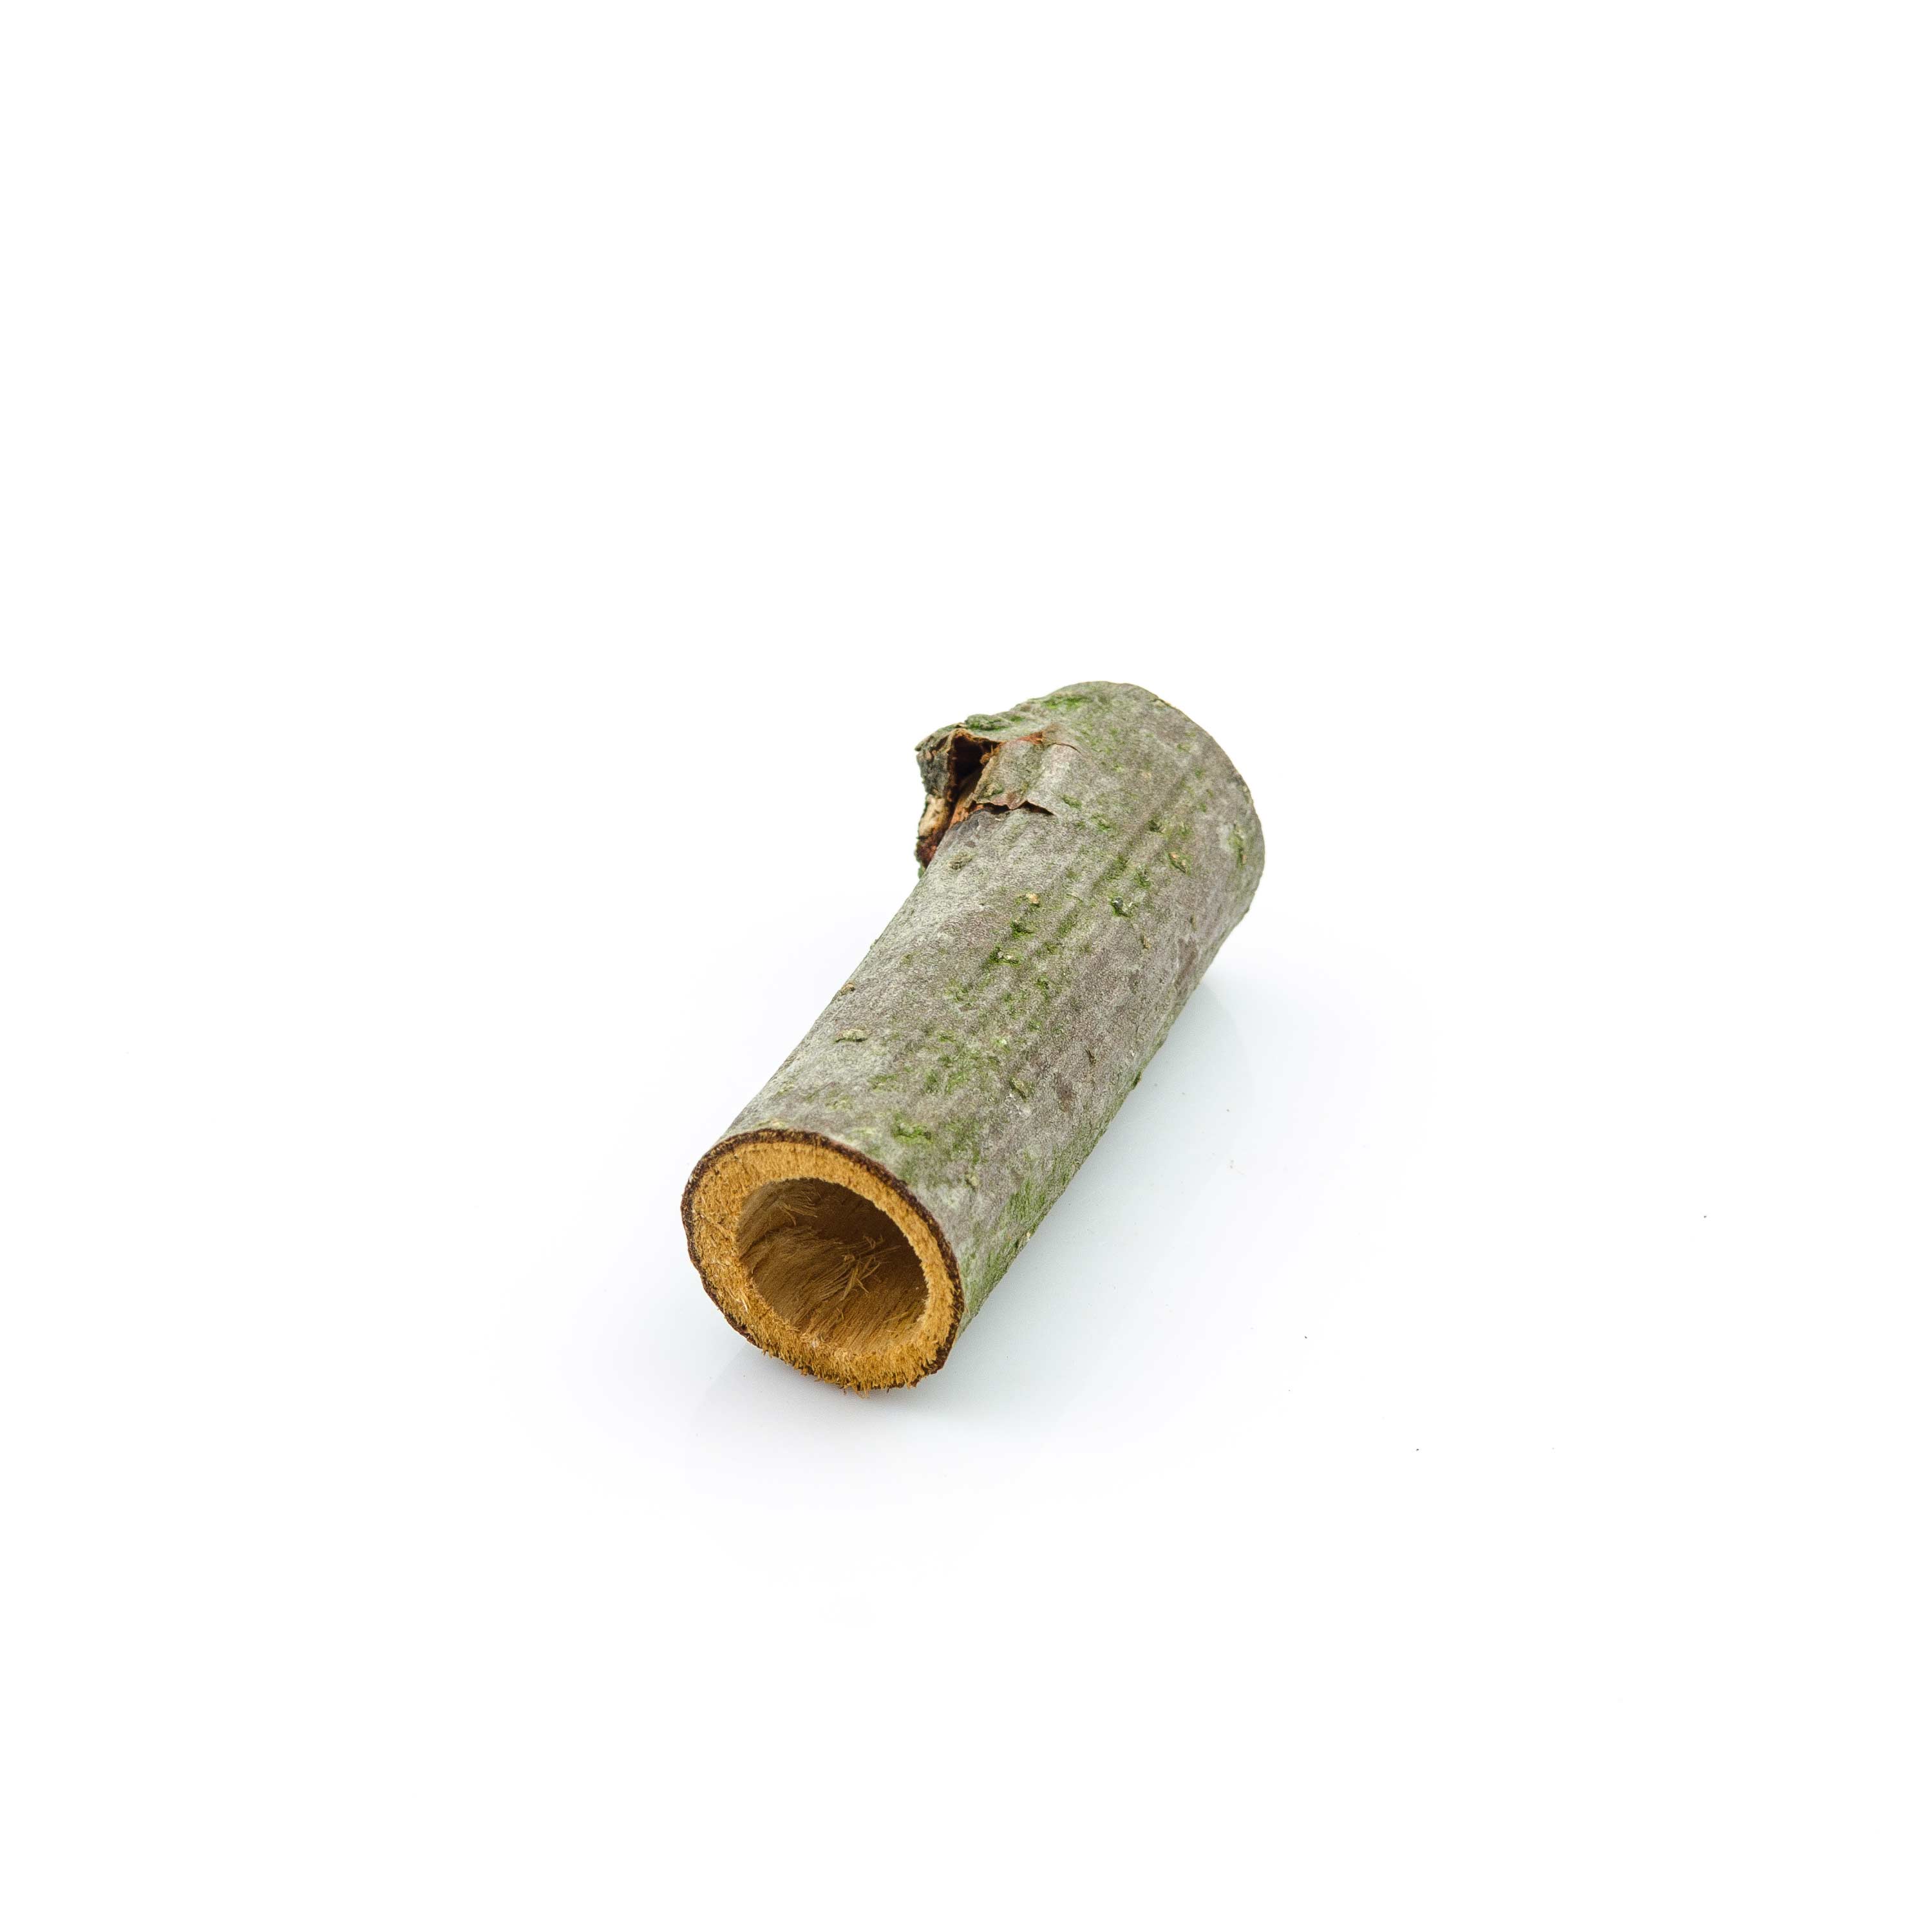 Alder wood tube - one end open 18 mm